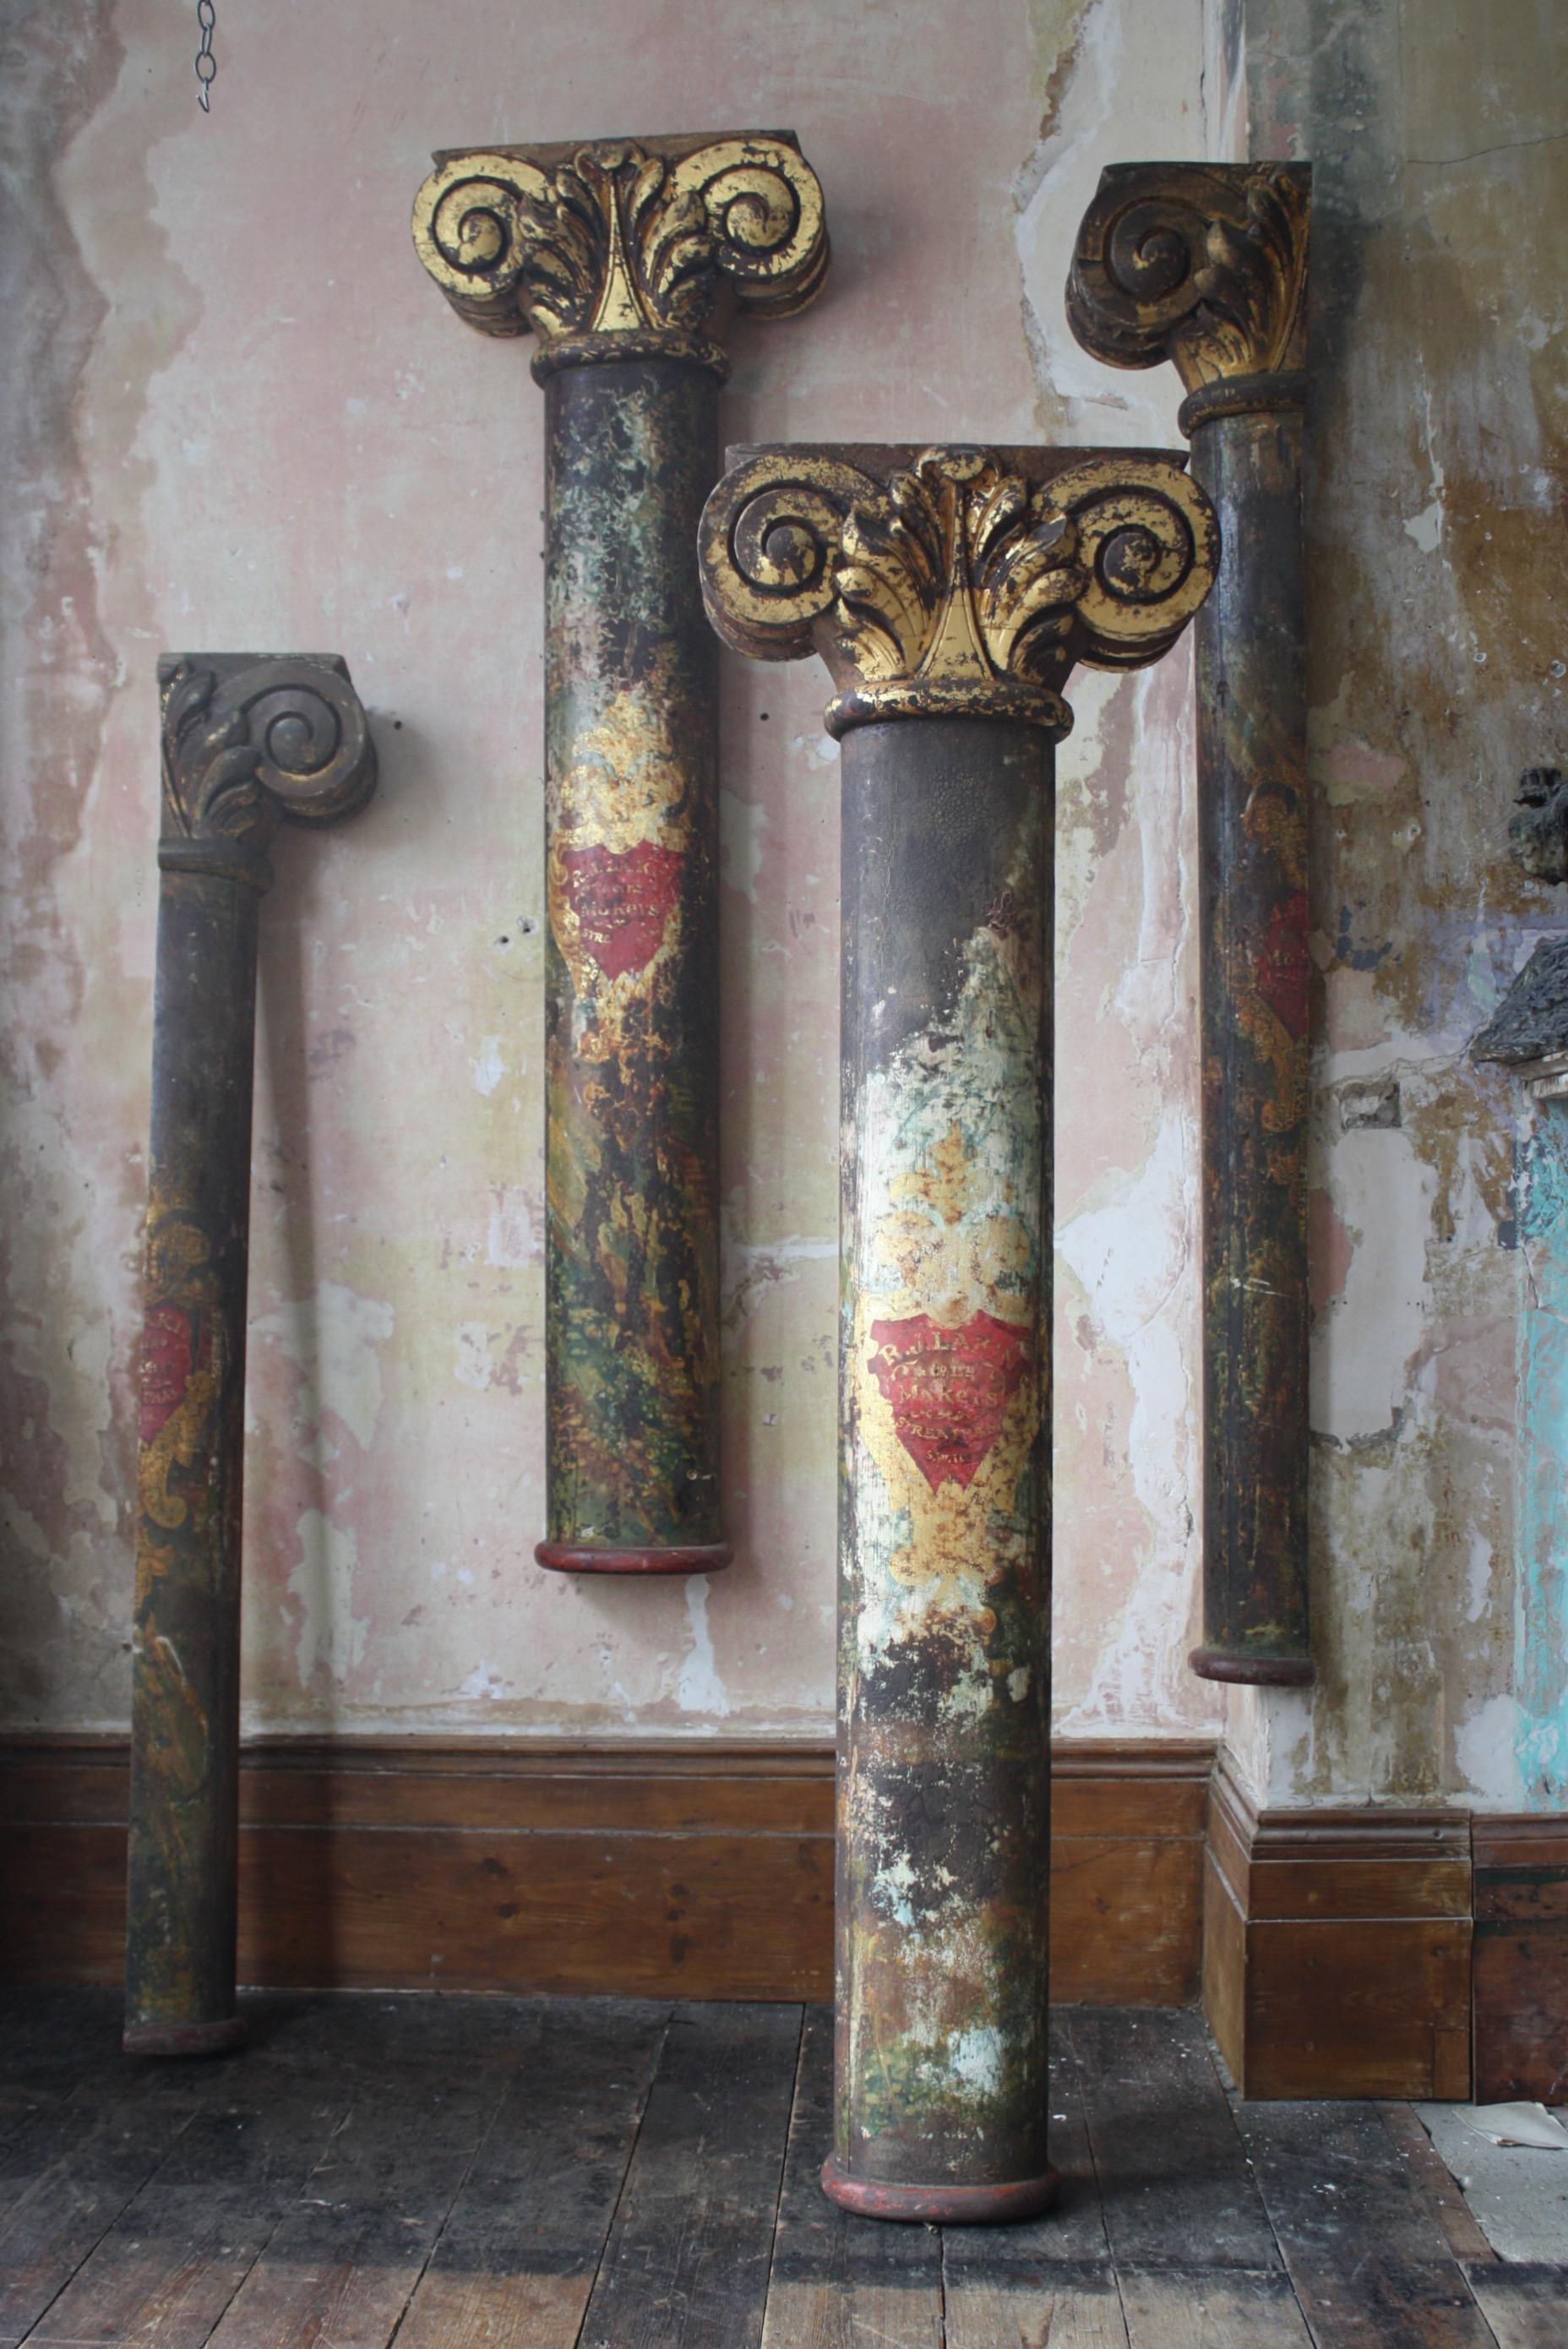 Un groupe vraiment fantastique de piliers de foire décoratifs totalement originaux et intacts, fabriqués par la tristement célèbre Robert J Lakin Company, 67 Besley Street, Streatham, Londres.

Les piliers sont creux, avec des chapiteaux